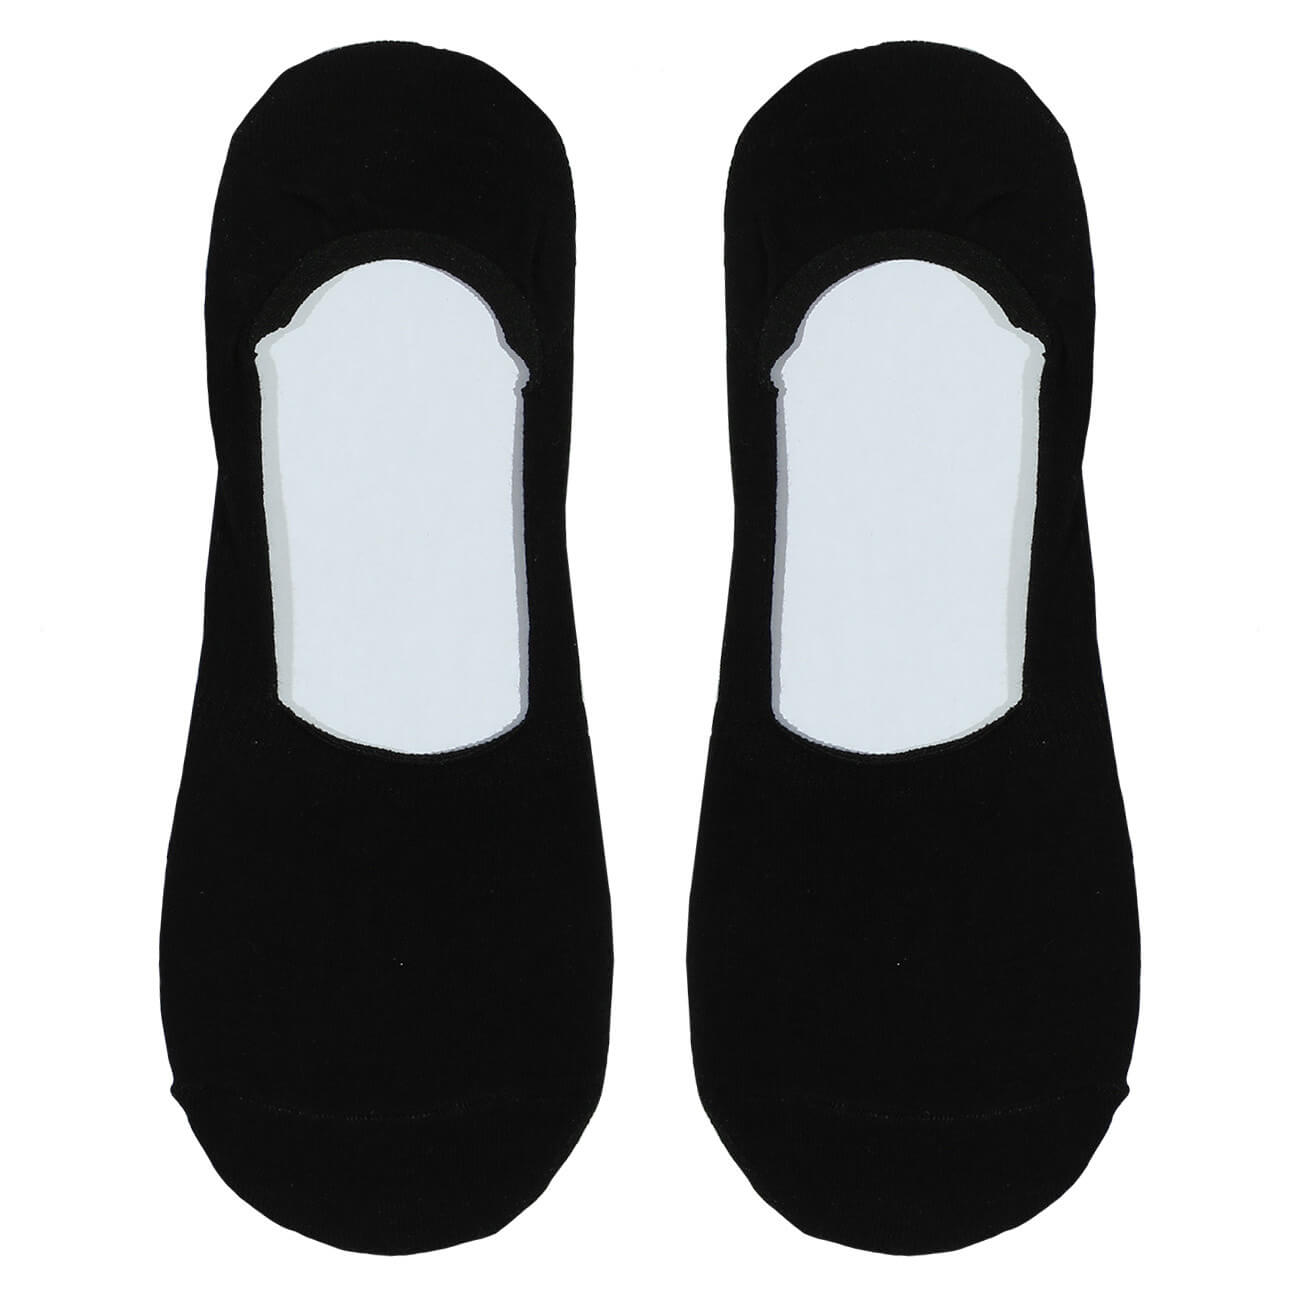 Носки-следки женские, р. 36-38, хлопок/полиэстер, черные, Basic носки следки женские р 38 41 хлопок полиэстер серые basic